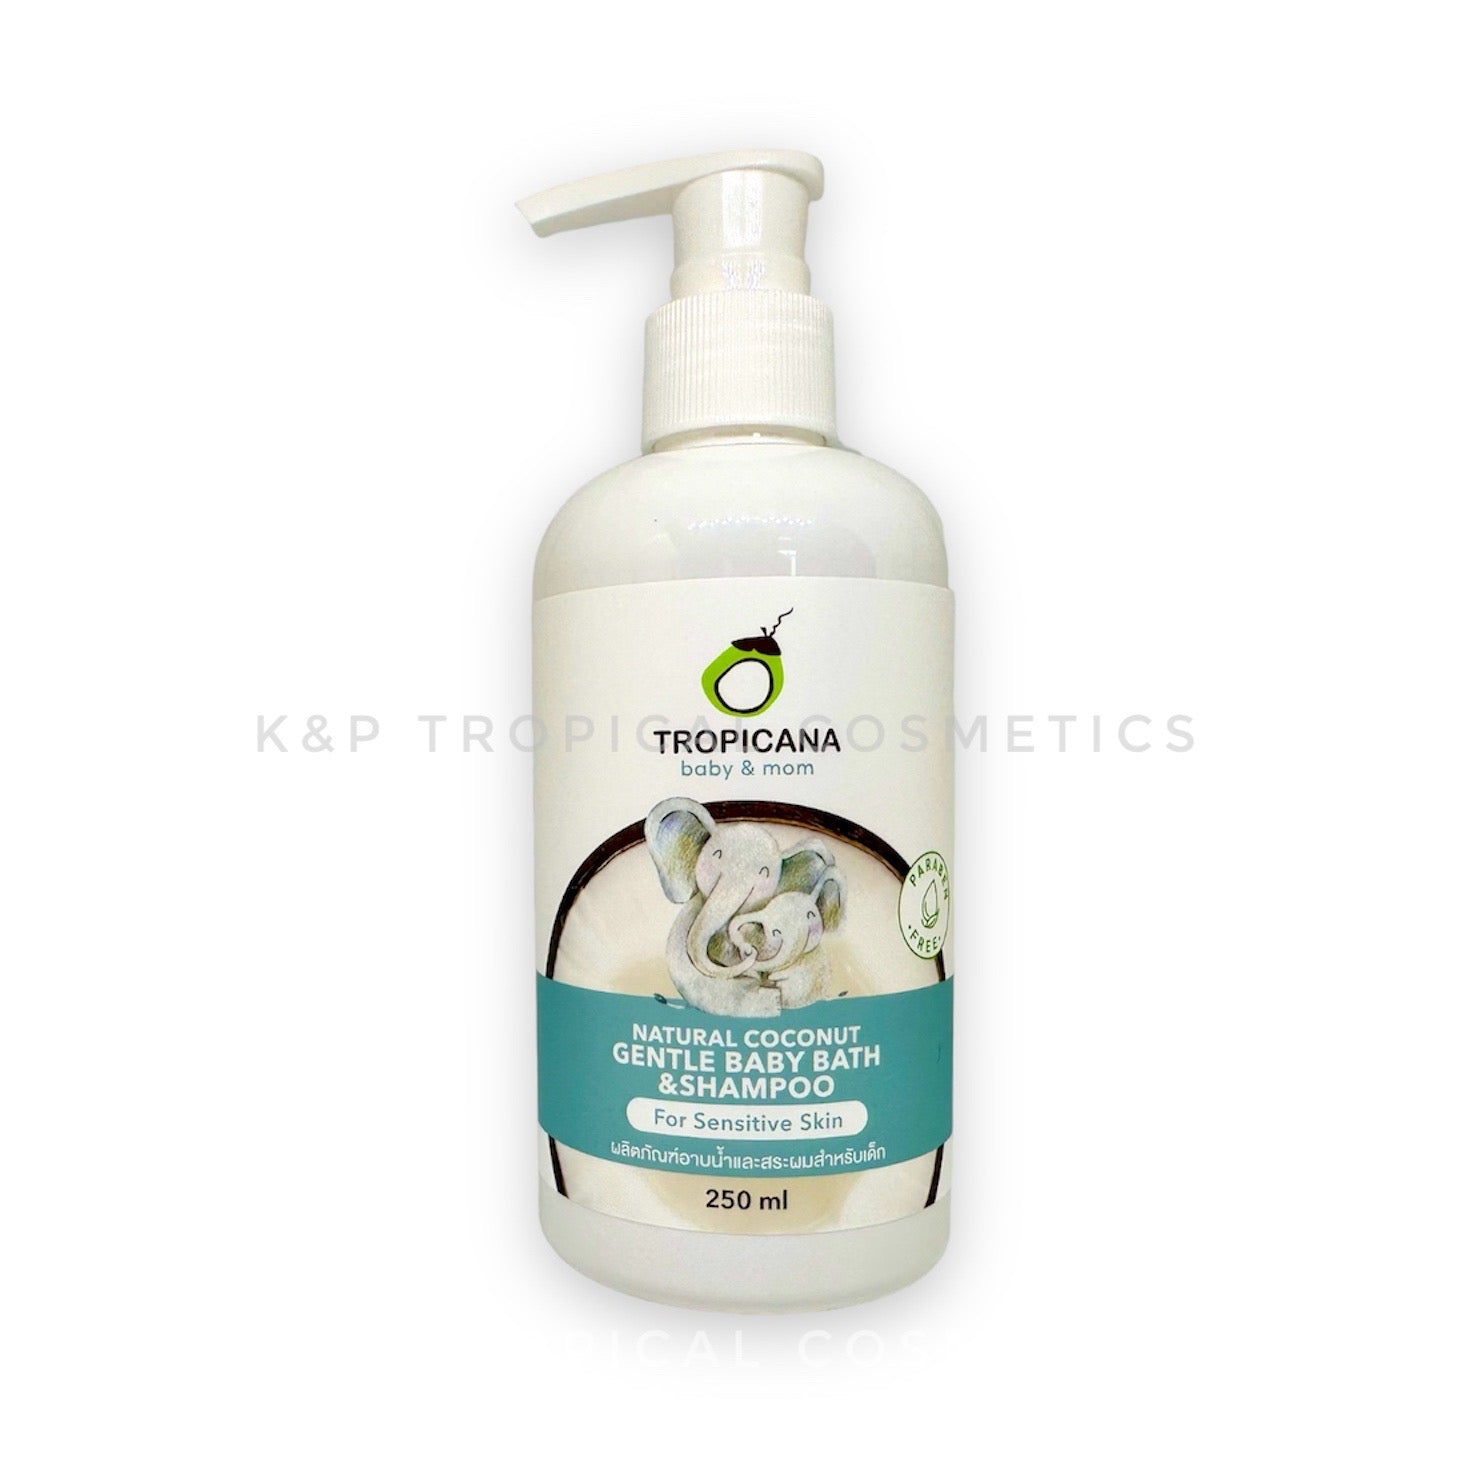 Tropicana Baby & Mom Gentle Baby Bath & Shampoo Natural Coconut 250 ml, Нежная детская пена для ванны и шампунь с натуральным маслом кокоса 250 мл